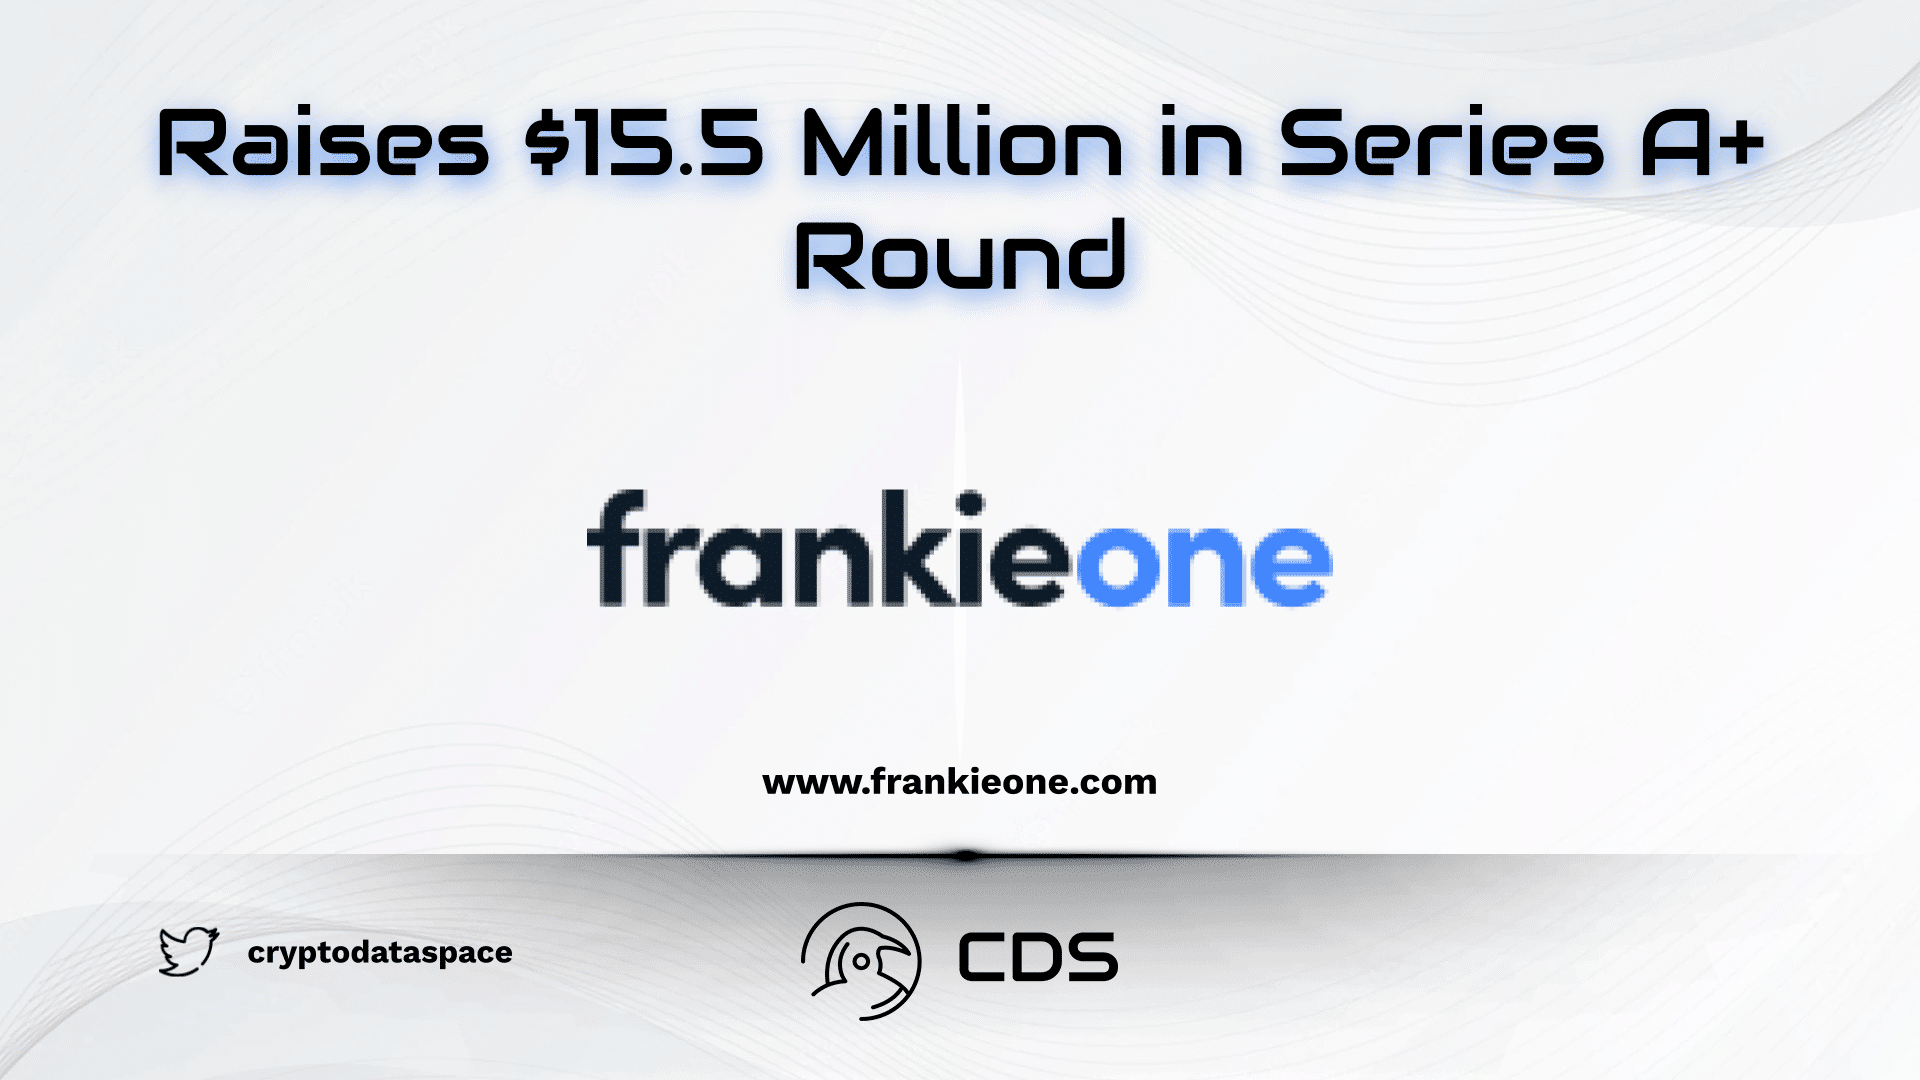 frankieone raises $15.5 million